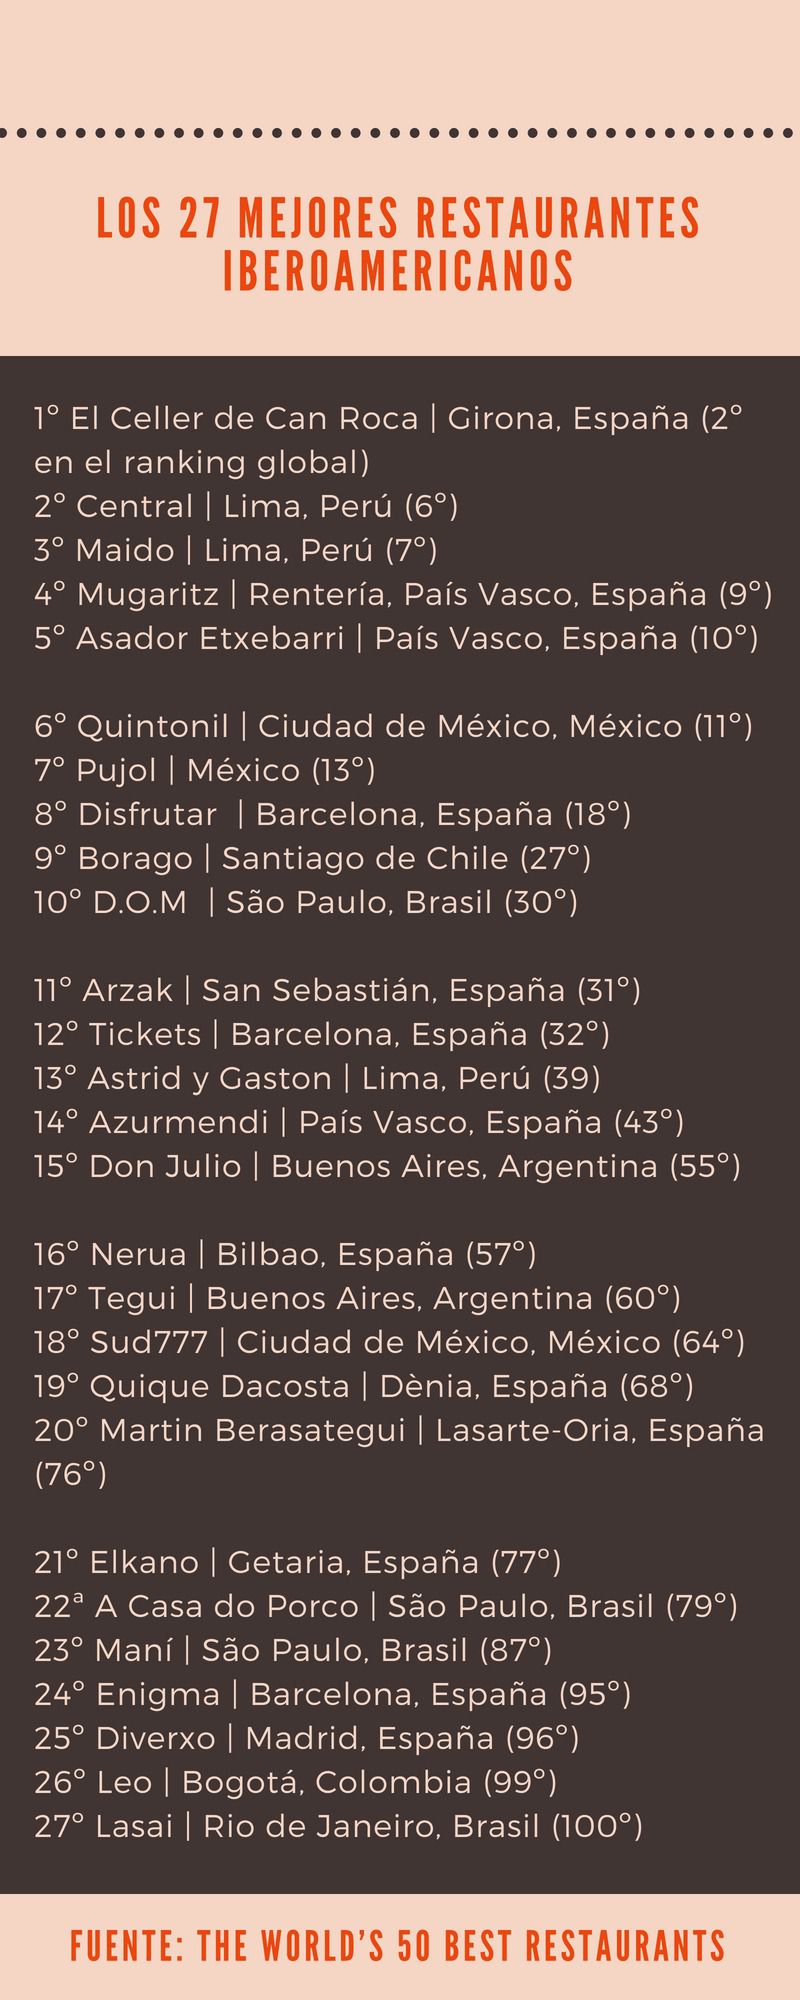 27 restaurantes iberoamericanos entre los mejores cien del mundo / Gráfico: ALN